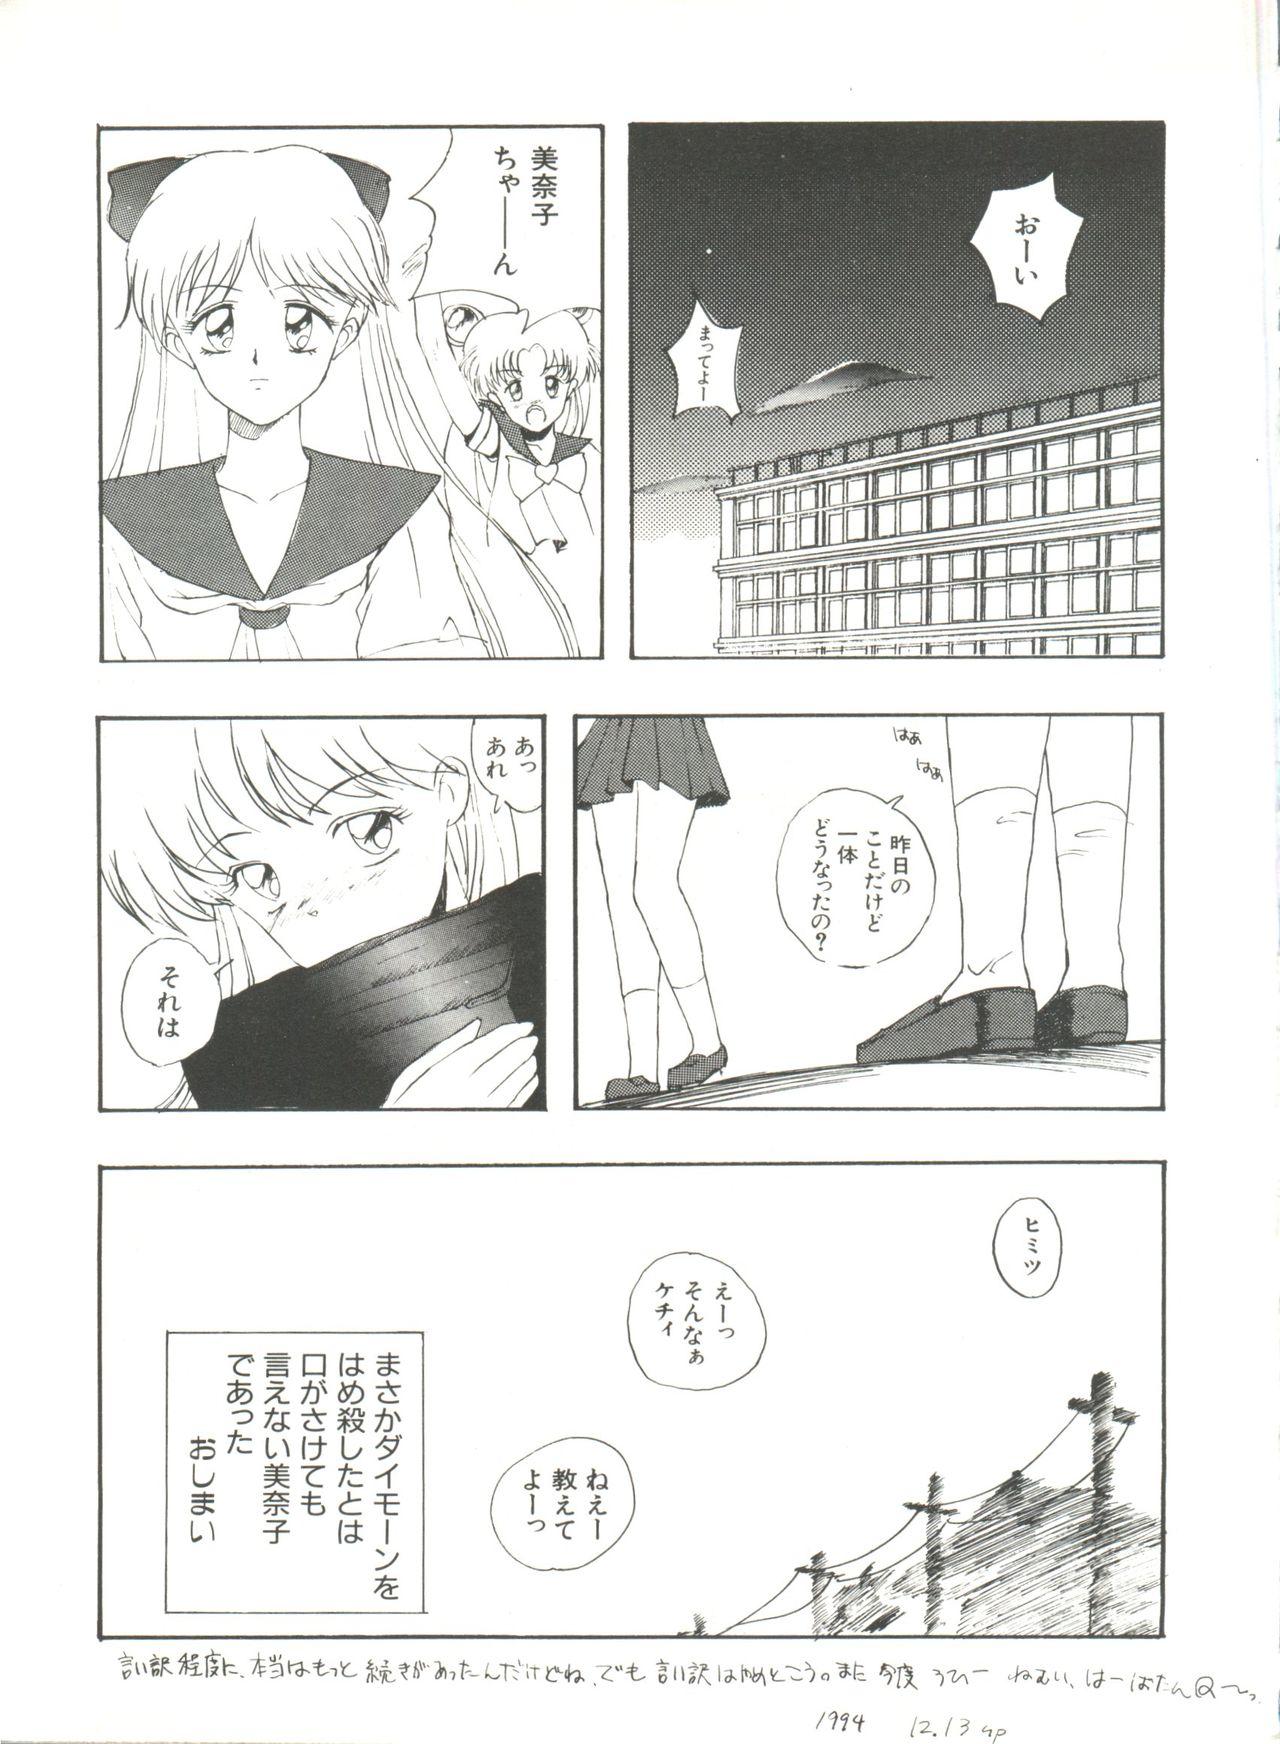 Bishoujo Doujinshi Anthology 10 - Moon Paradise 6 Tsuki no Rakuen 145